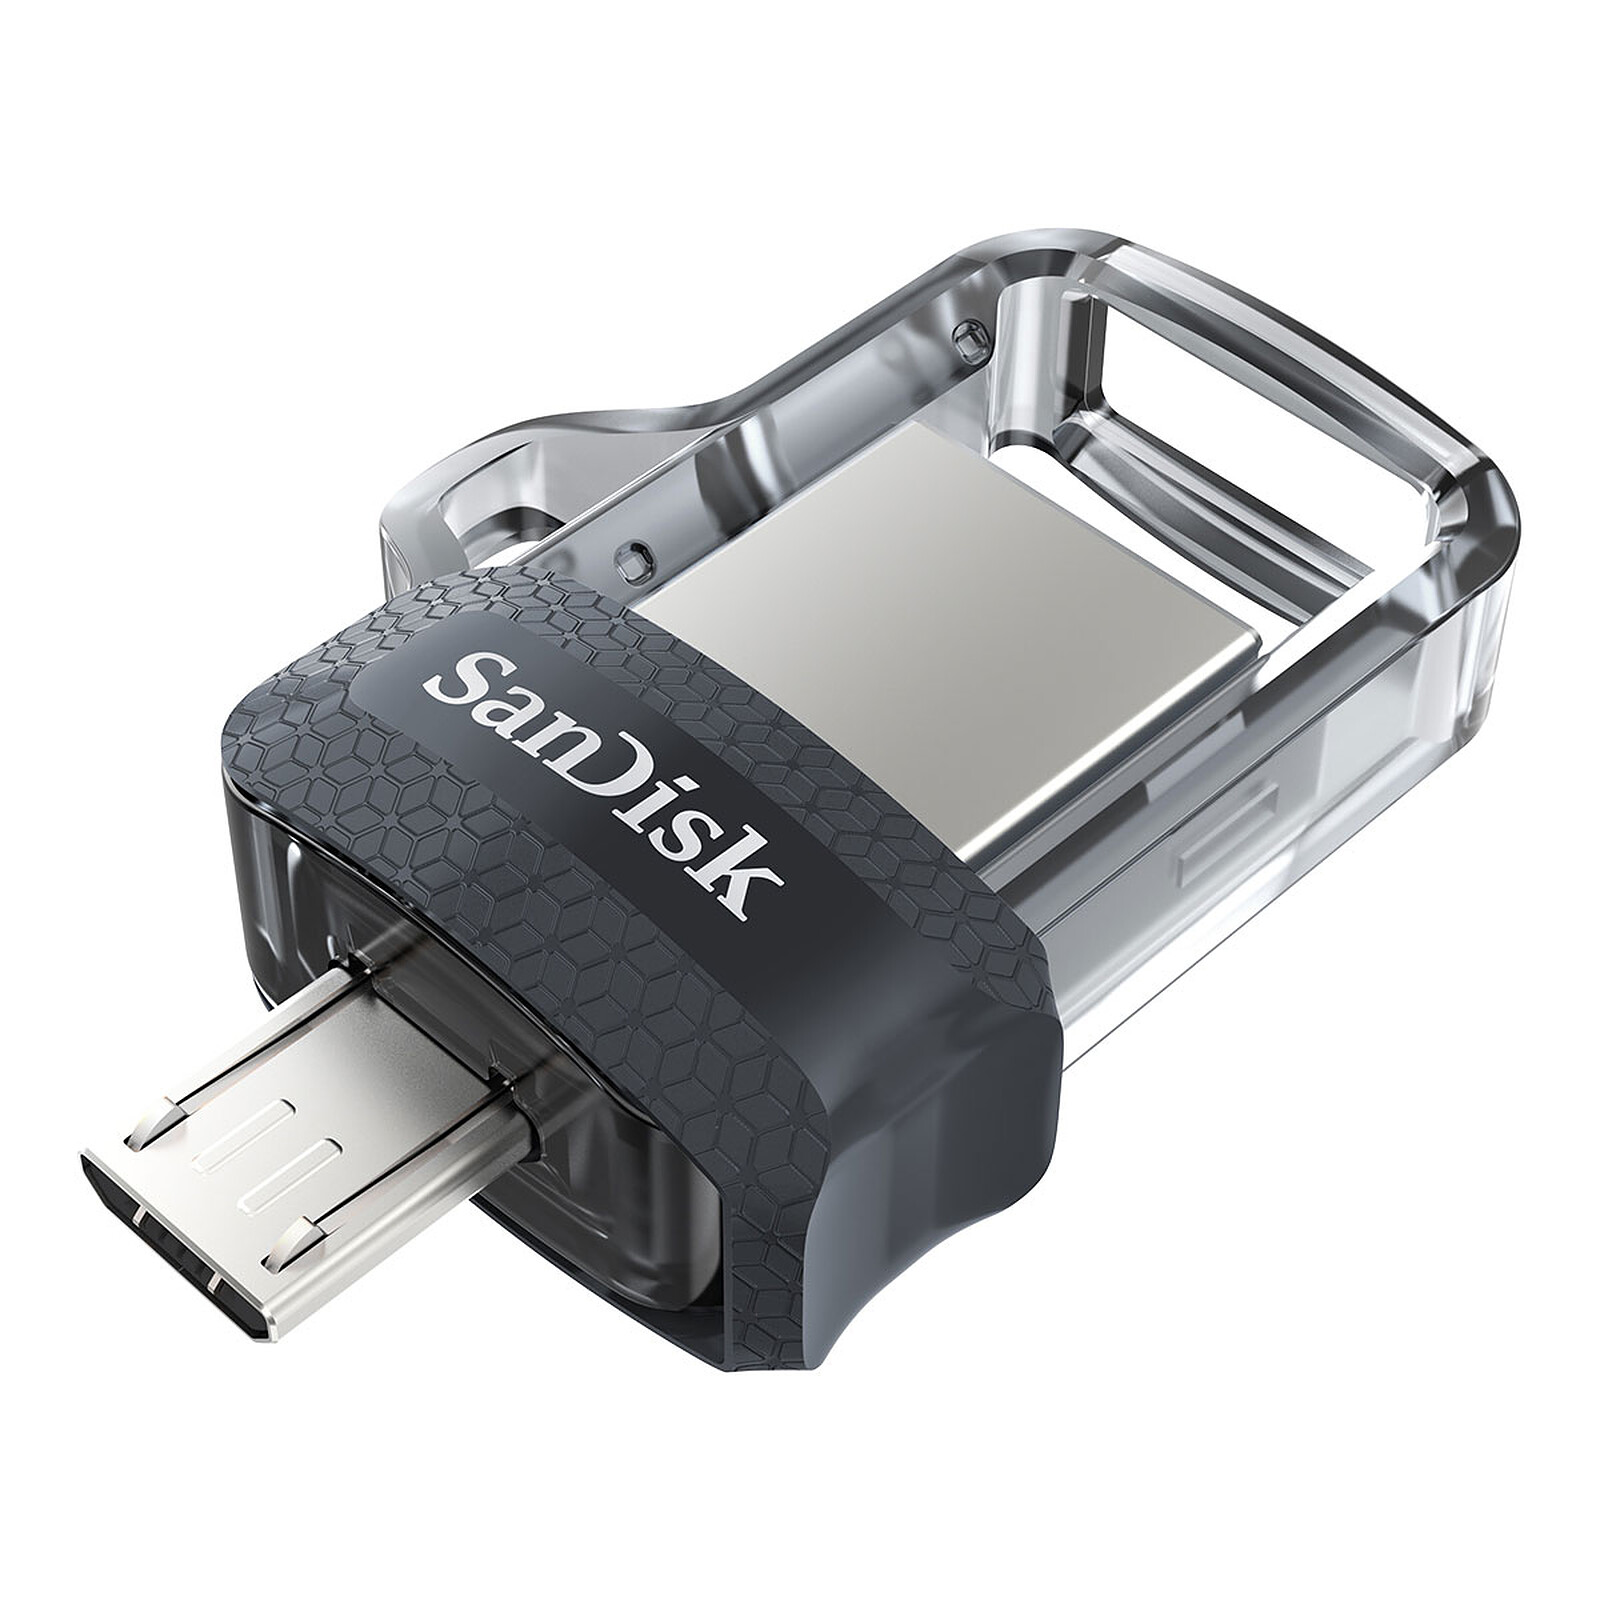 Clé USB 3.0 / micro USB pour téléphone portable / tablette vers pc